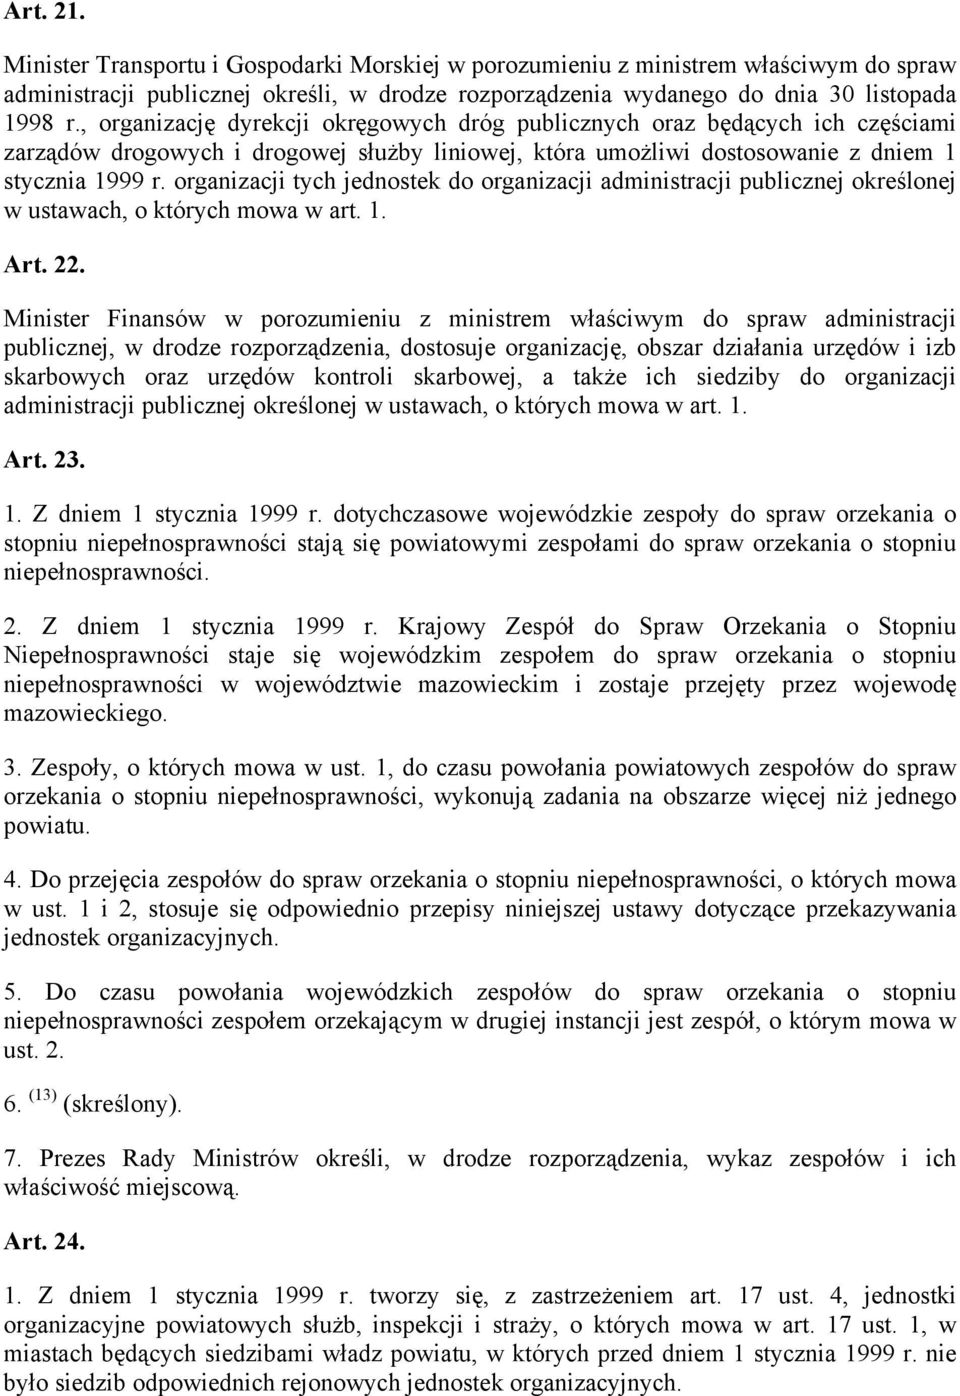 organizacji tych jednostek do organizacji administracji publicznej określonej w ustawach, o których mowa w art. 1. Art. 22.